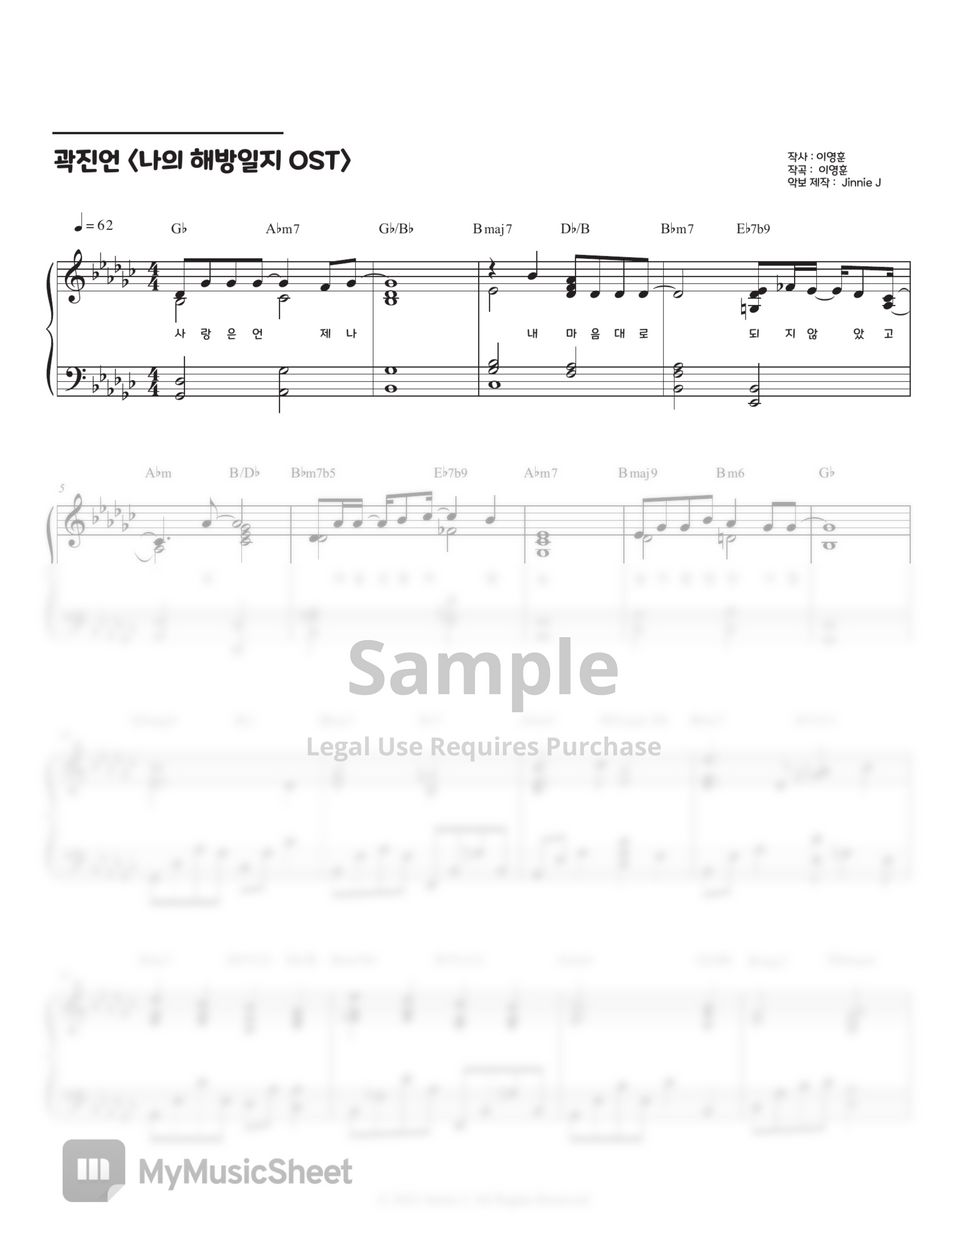 곽진언 - 일종의 고백 (나의 해방일지 OST) (Gb, G key) by Jinnie J